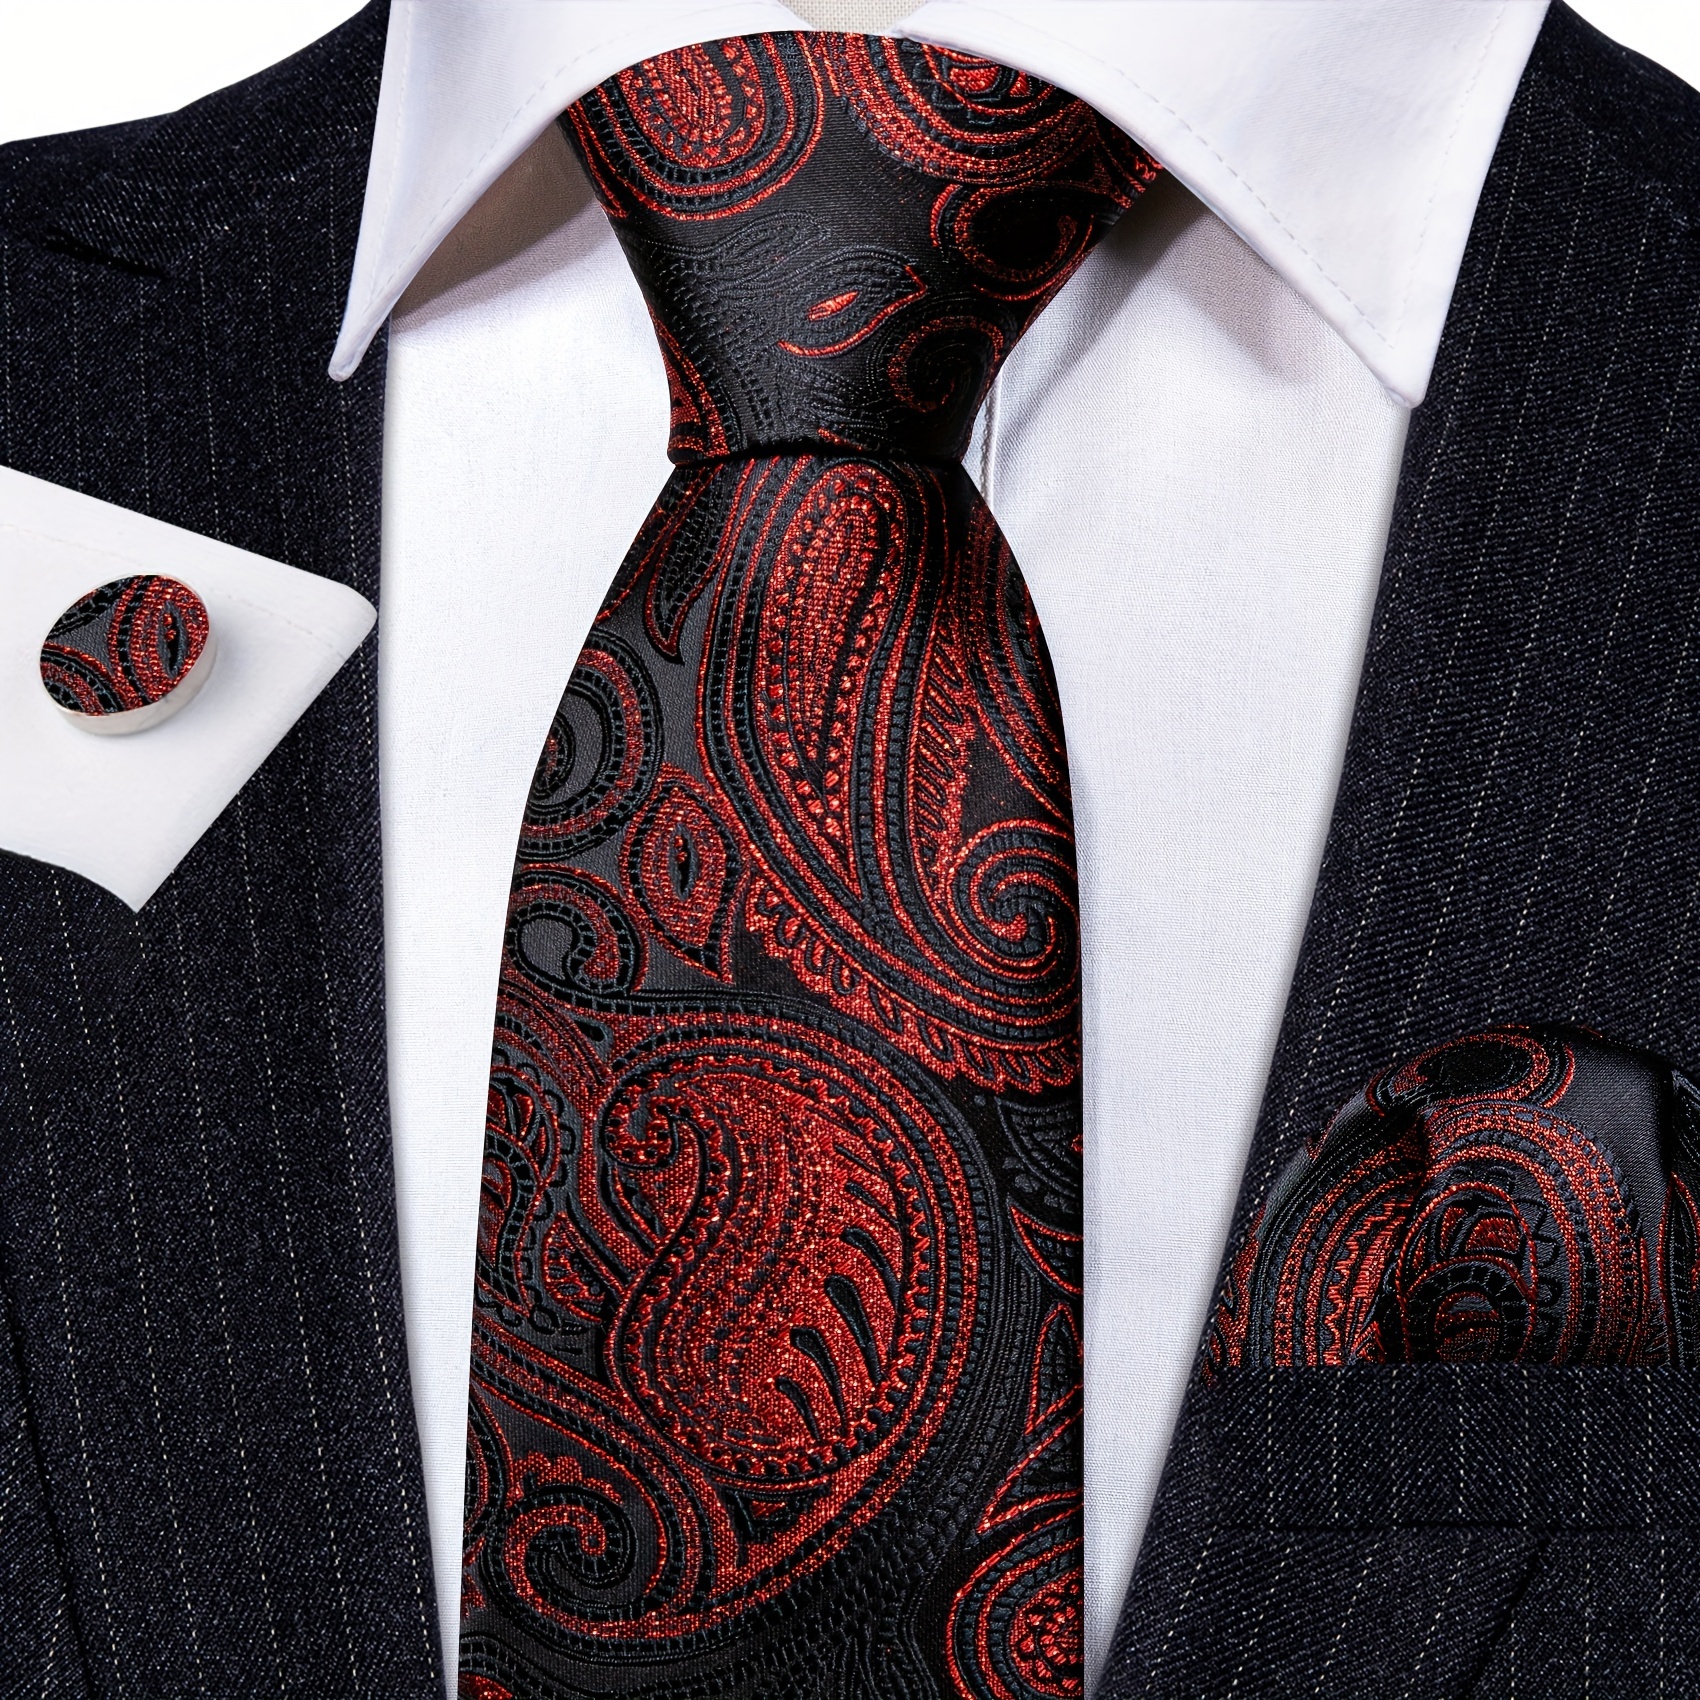 Buy Hi-Tie Fashion Black Tie Handkerchief Cufflinks set Woven Silk Necktie  for Men (new plaid) at